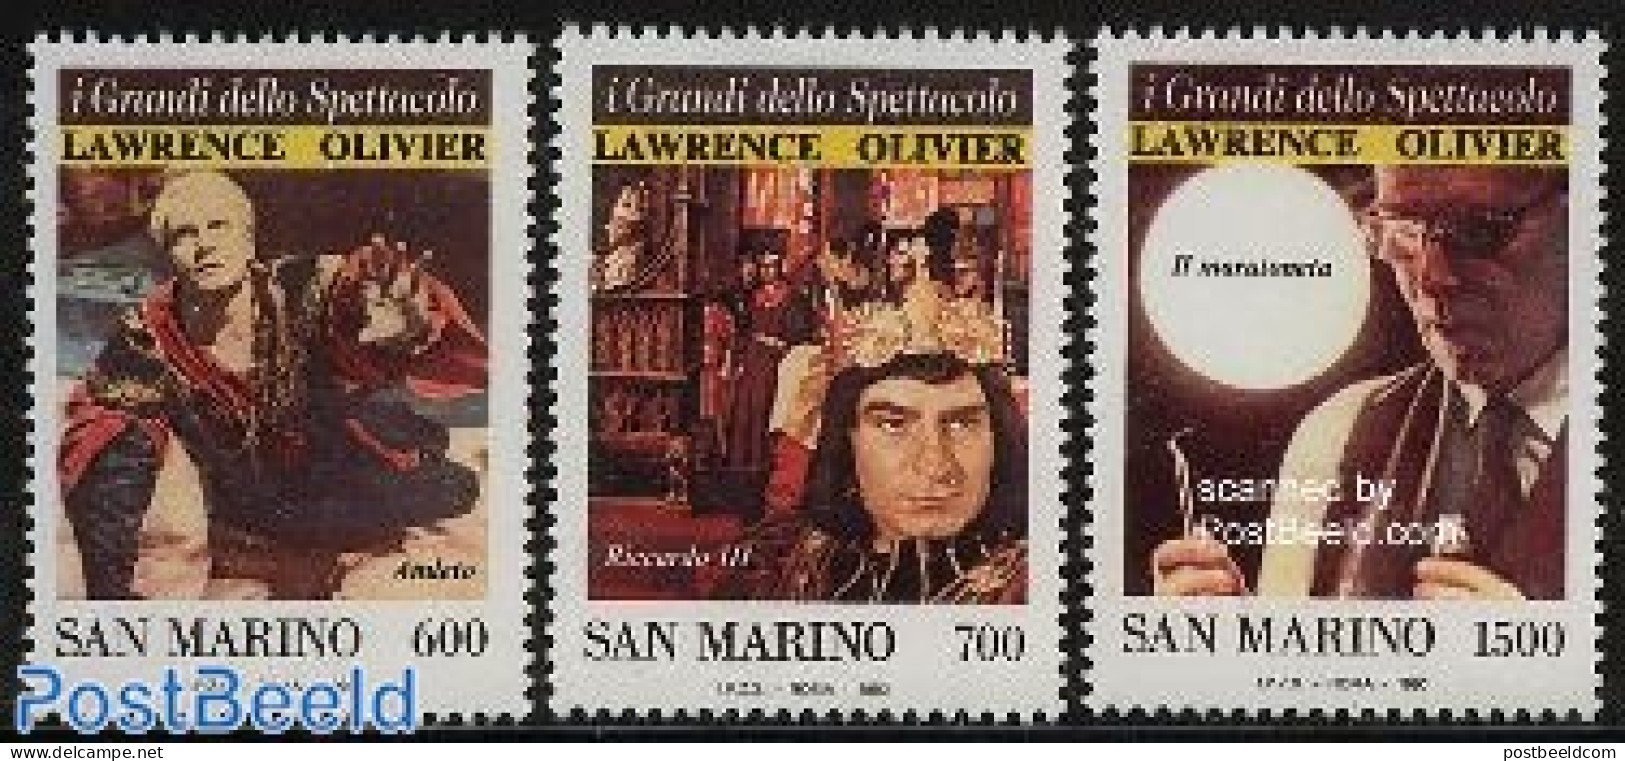 San Marino 1990 I Grandi Della Spettacolo 3v, Mint NH, Performance Art - Theatre - Nuevos